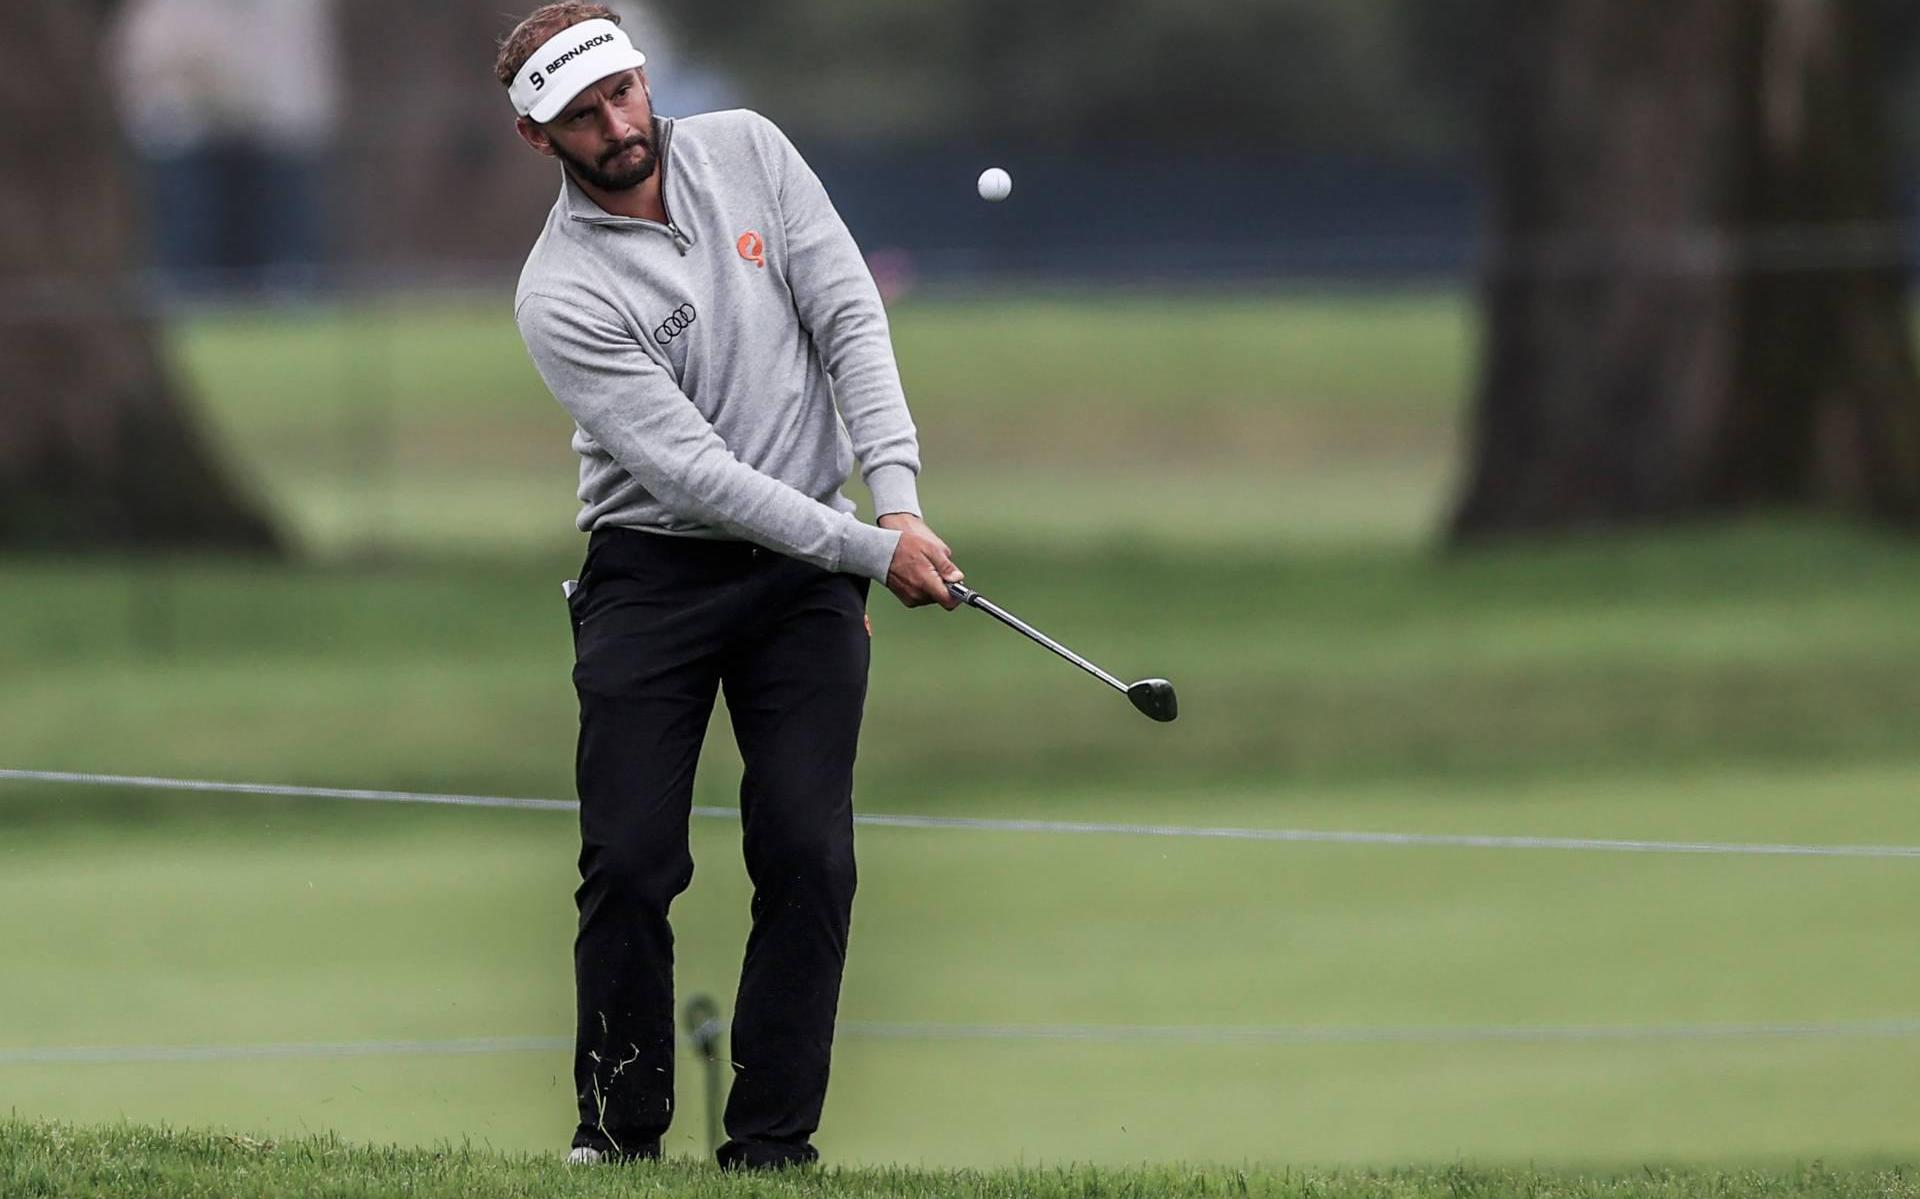 Golfer Luiten verbetert zich in majortoernooi San Francisco